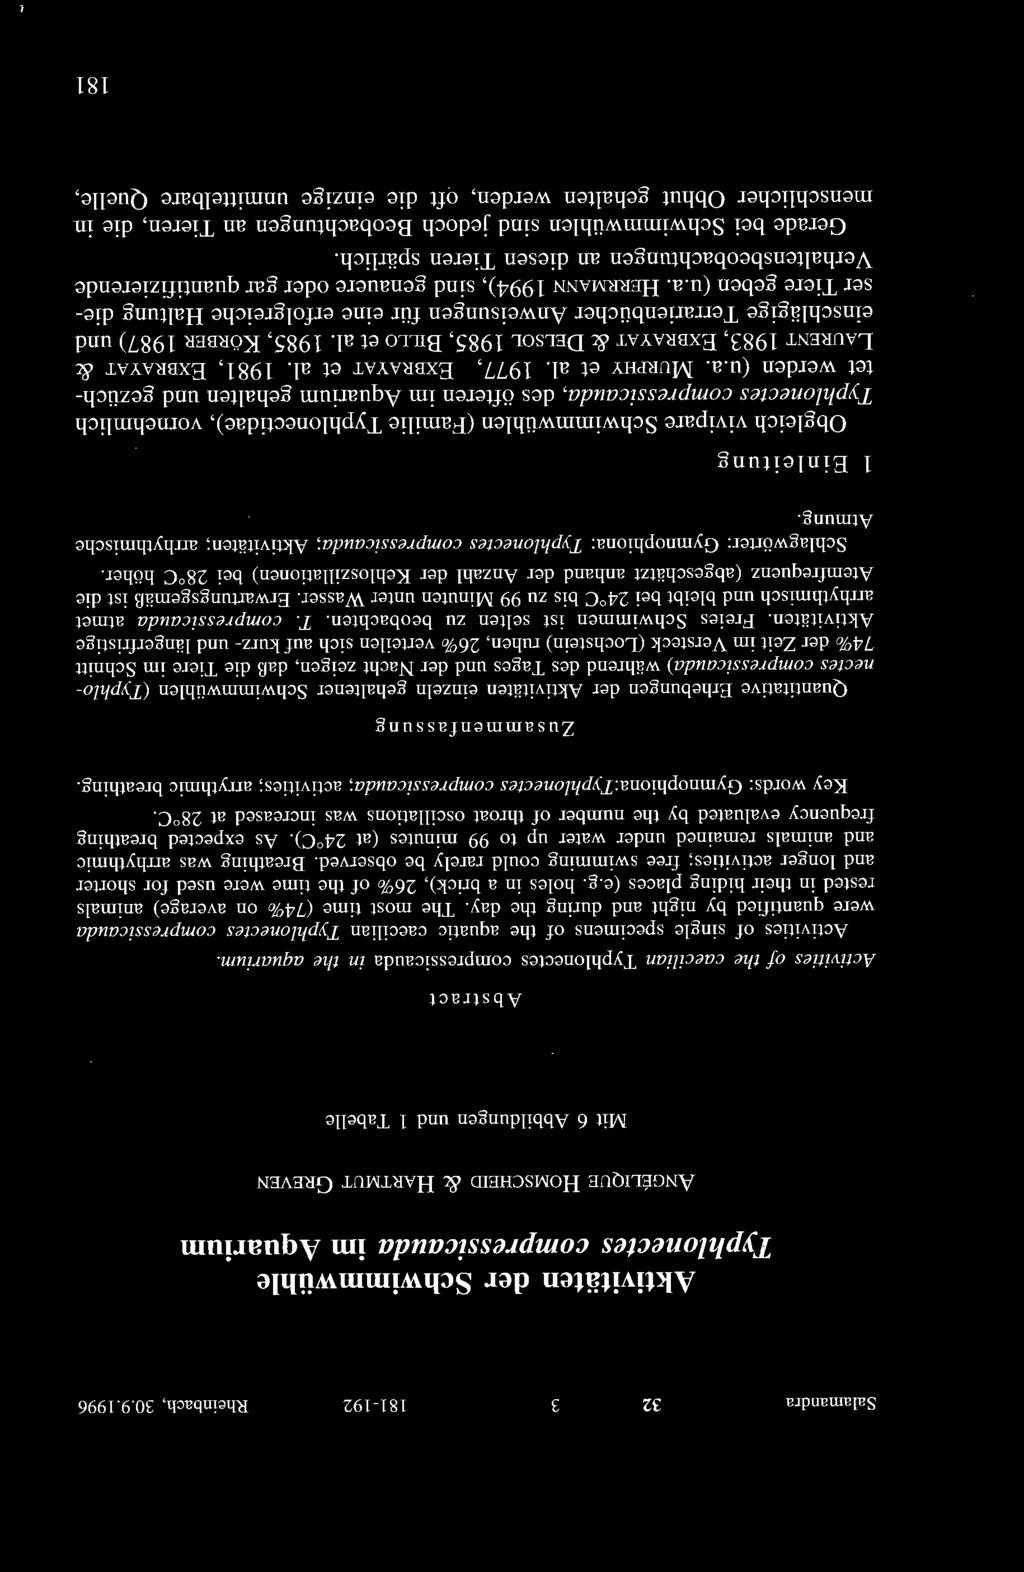 1996 Aktivitäten der Schwimmwühle Typhlonectes compressicauda im Aquarium ANGELIQUE HüMSCHEID & HARTM UT GREVEN Mit 6 Abbildungen und 1 Tabelle Abstract Activities of the caecilian Typhlonectes